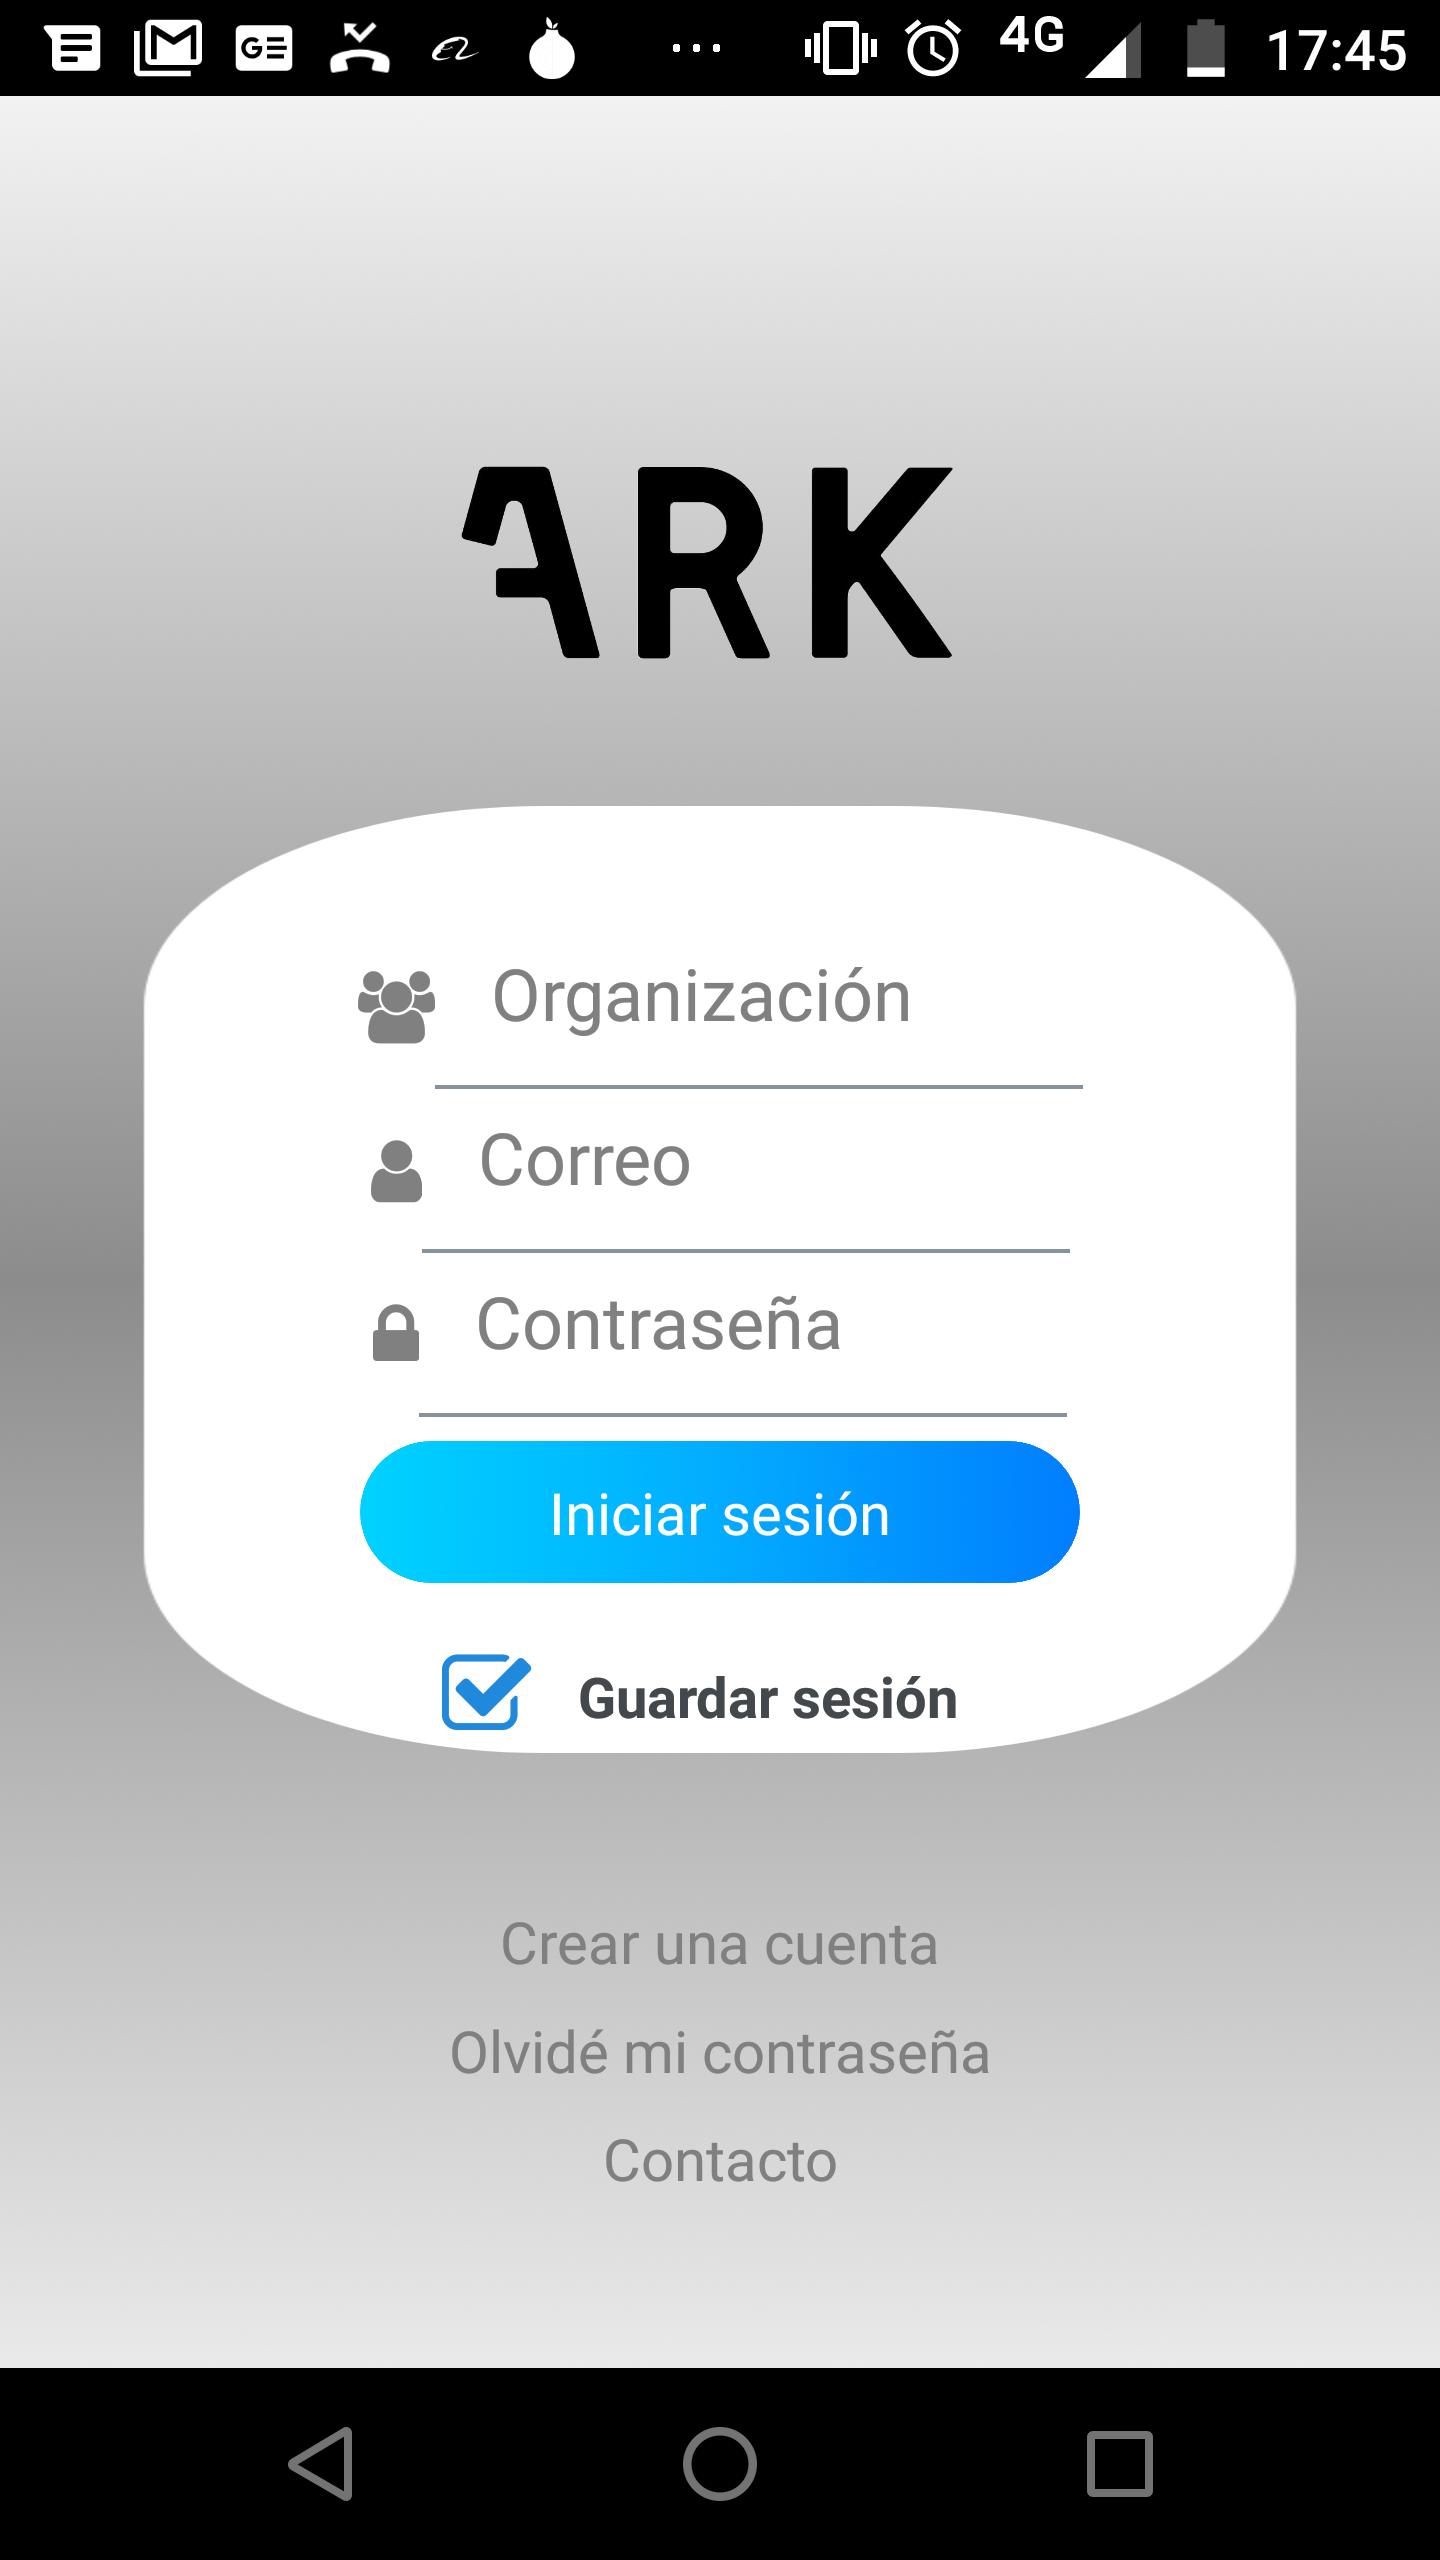 App ark